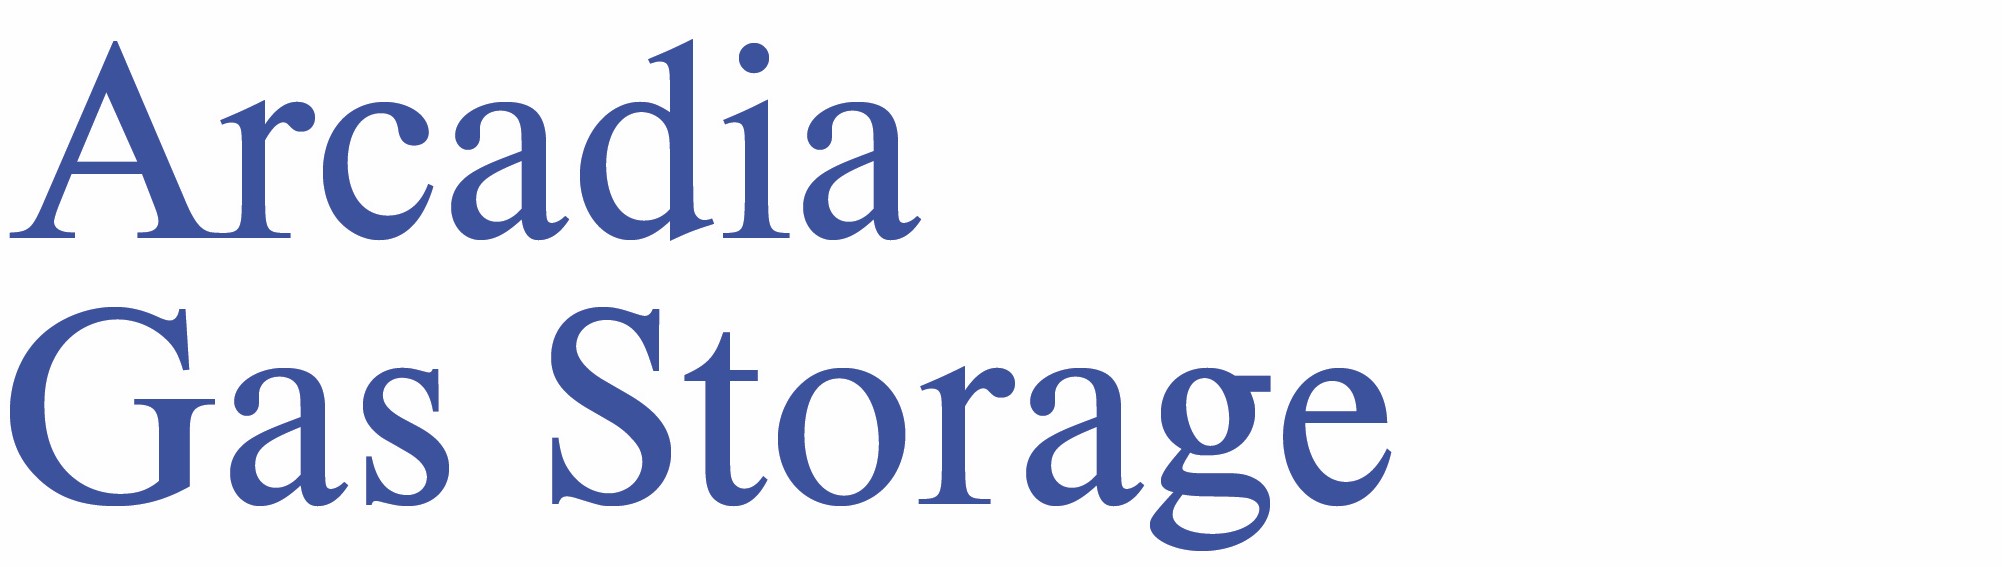 Arcadia Gas Storage LLC